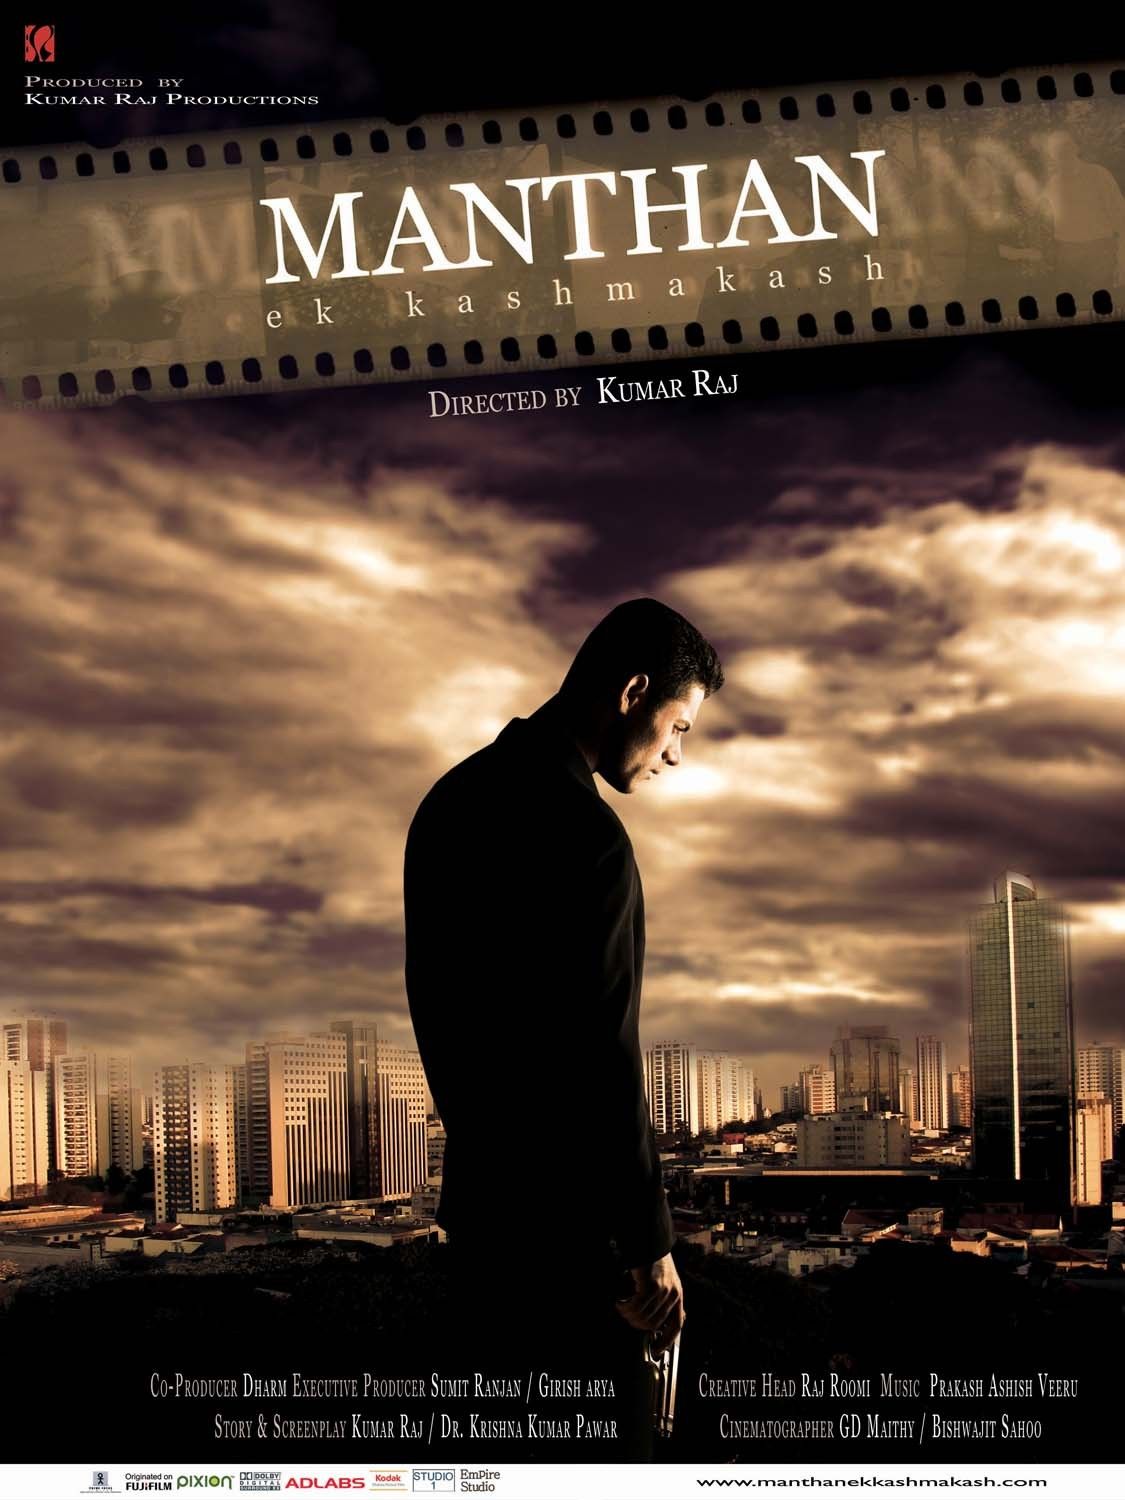 Extra Large Movie Poster Image for Manthan Ek Kashmakash (#2 of 2)